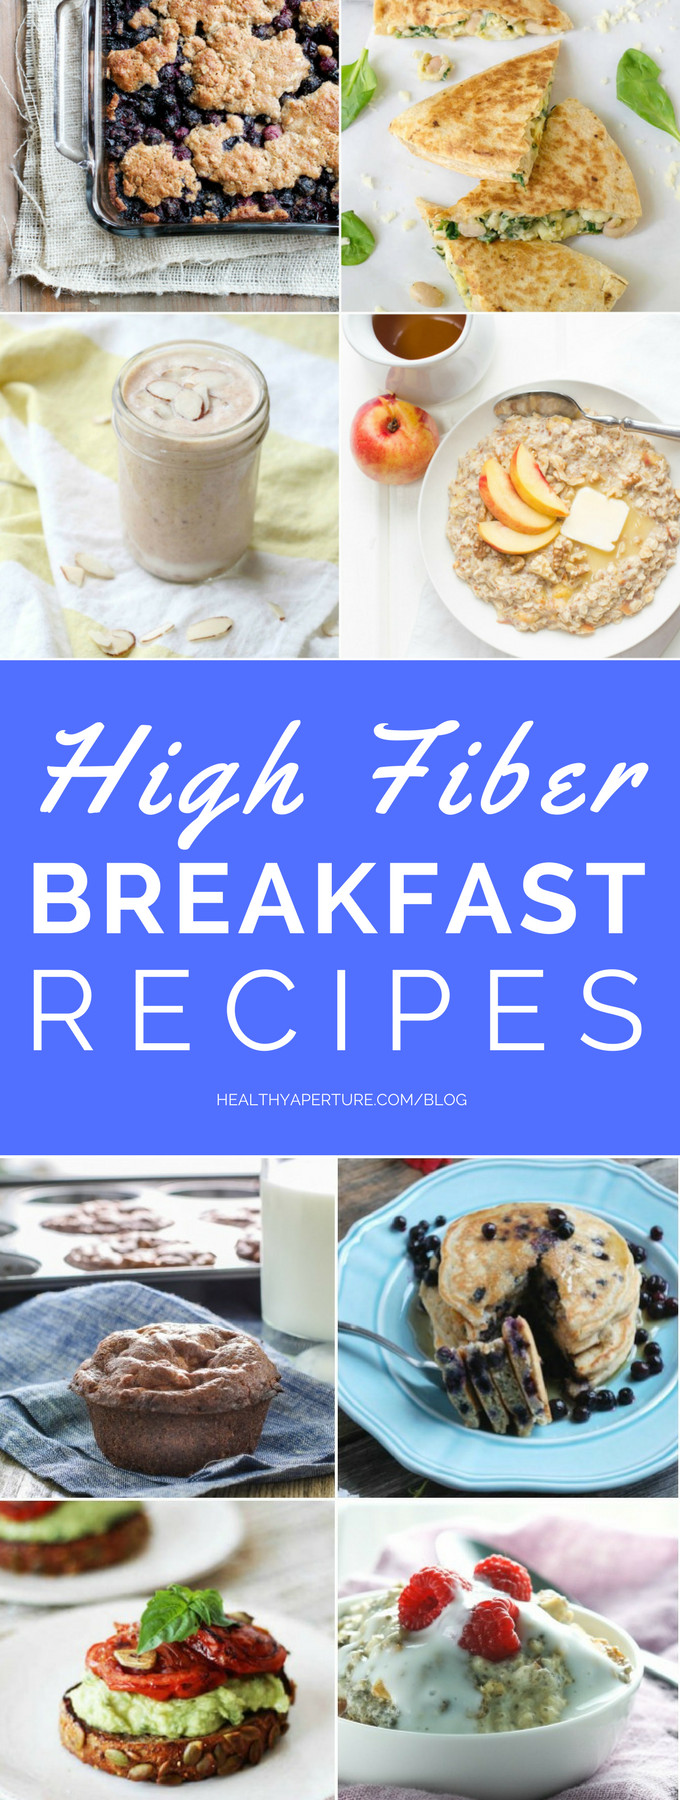 High Fiber Breakfast Recipe
 High Fiber Breakfast Recipes